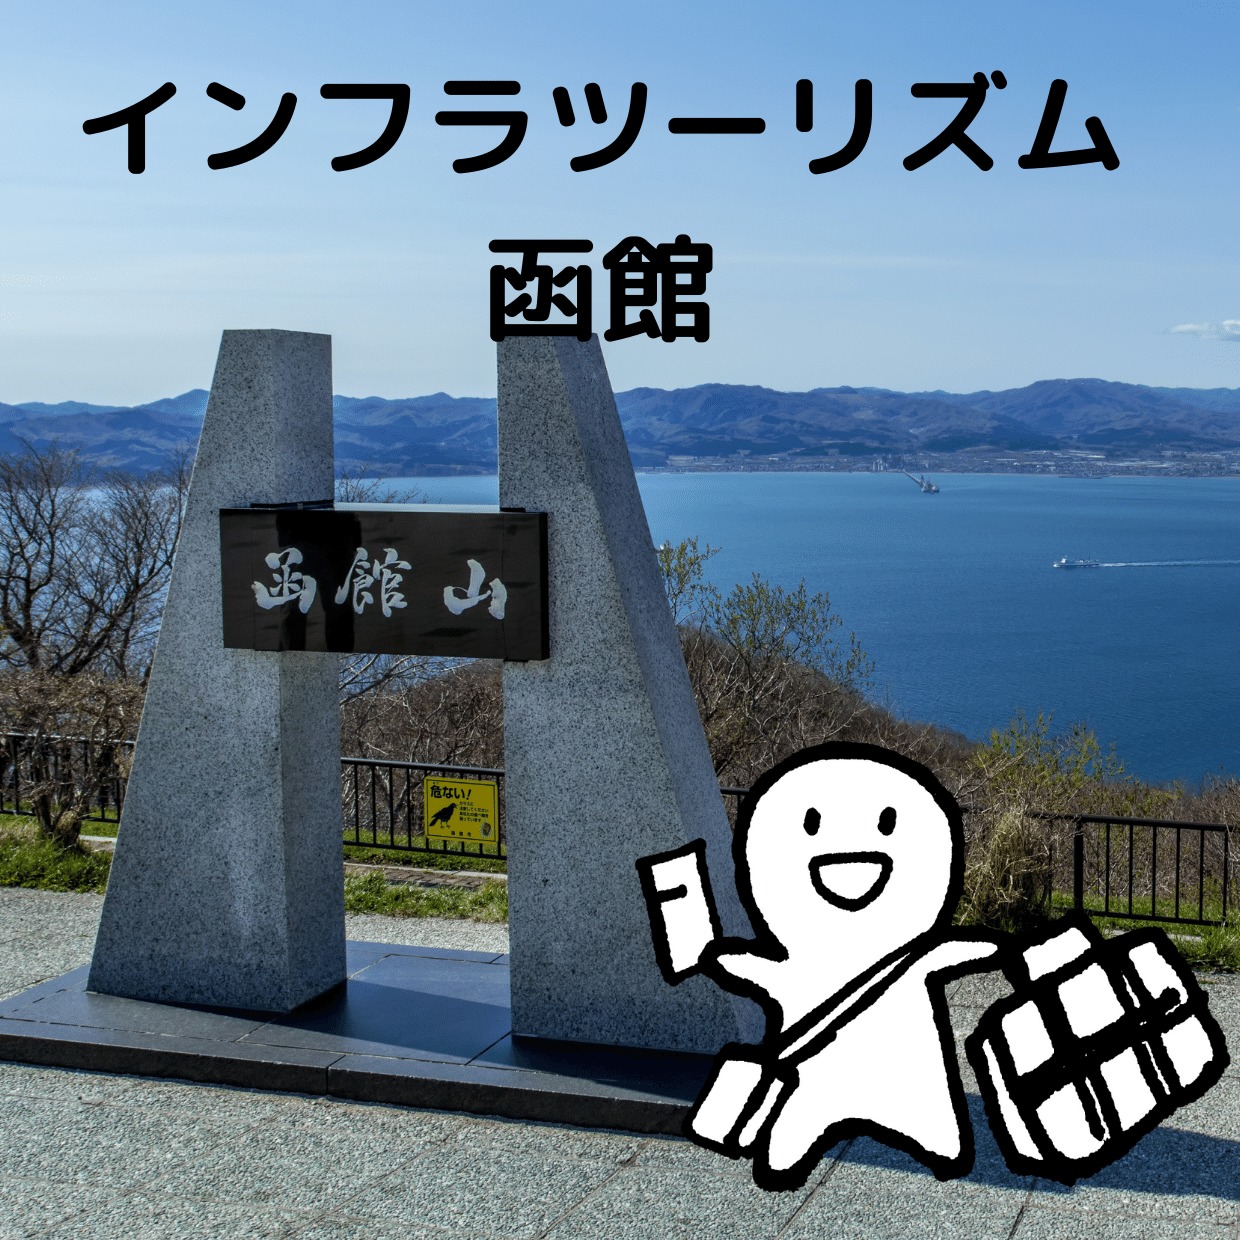 インフラツーリズム函館を回る旅プラン